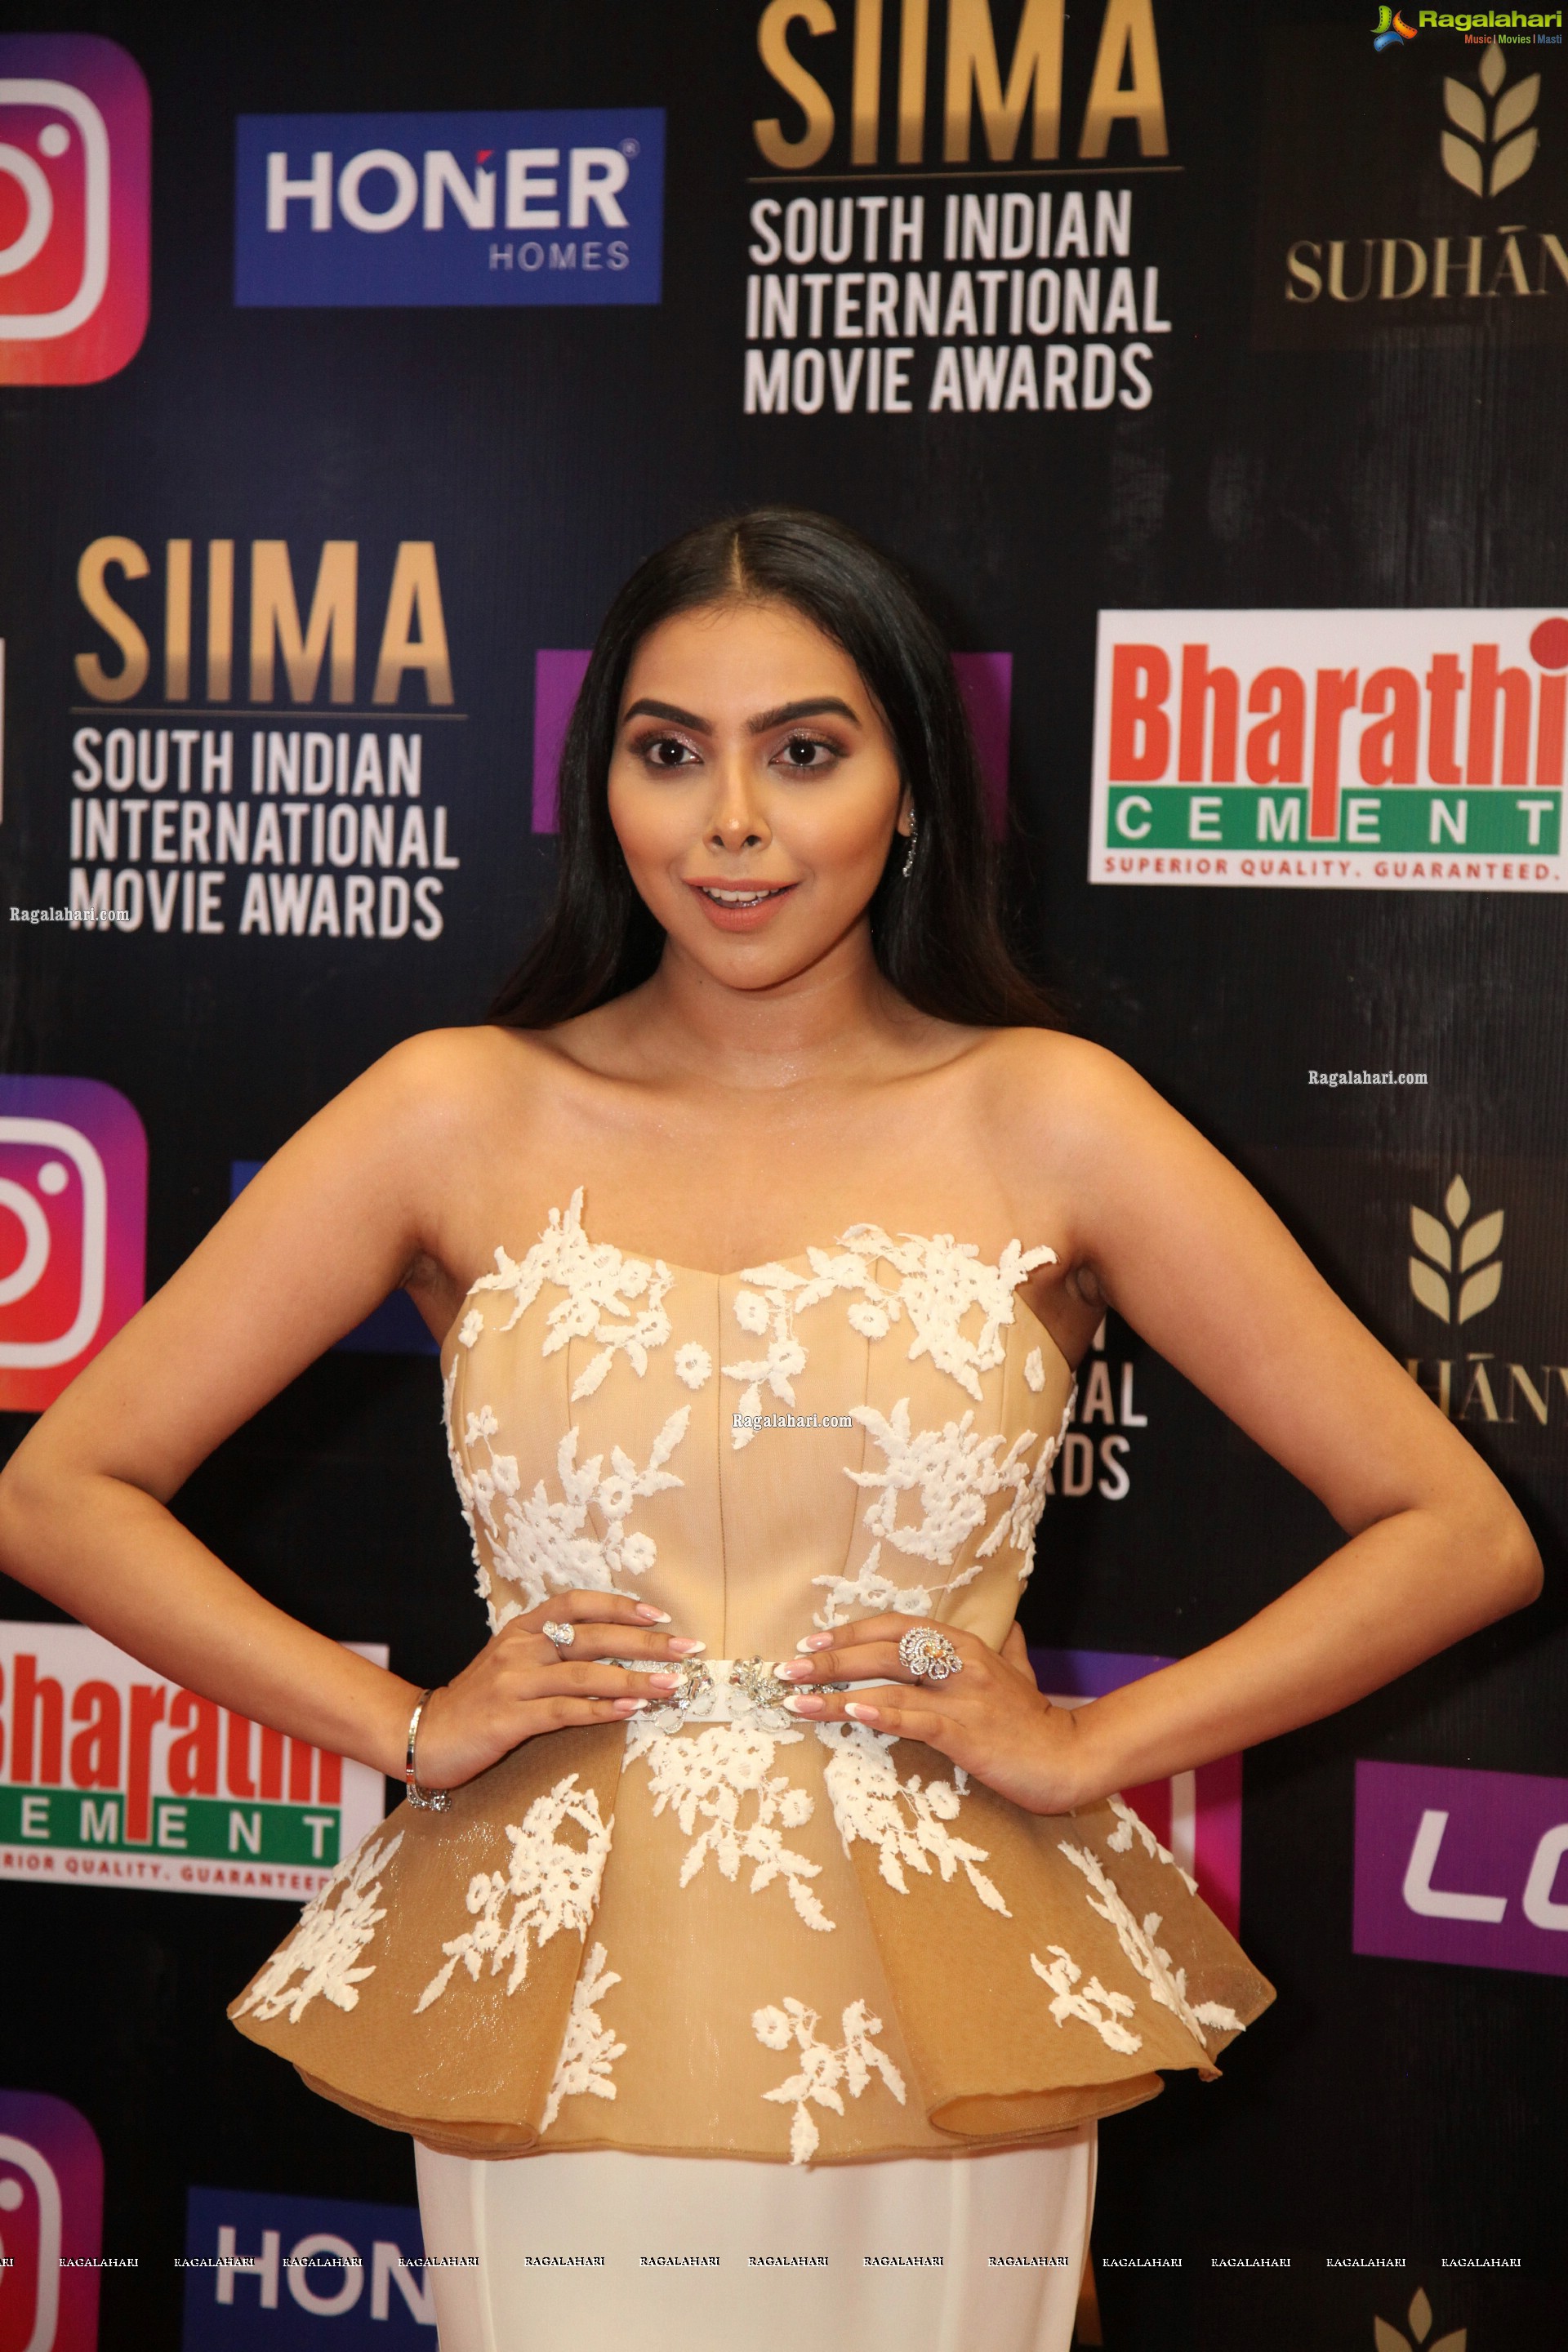 Akshaya at SIIMA Awards 2021, HD Photo Gallery